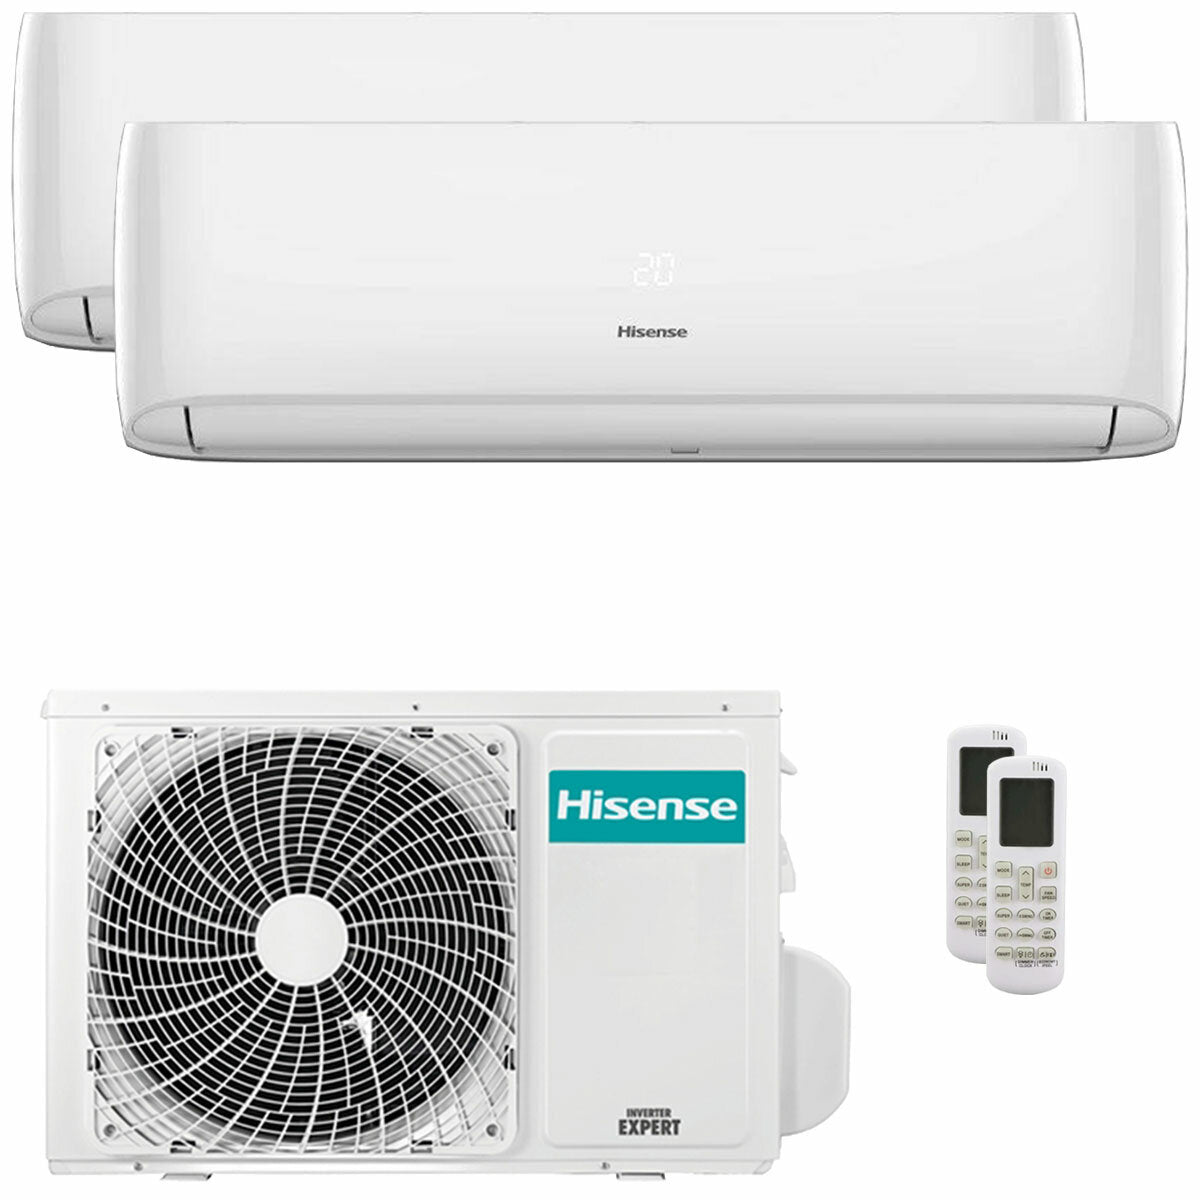 Hisense Hi-Comfort climatiseur double split 9000+9000 BTU onduleur A++ wifi unité extérieure 5,5 kW